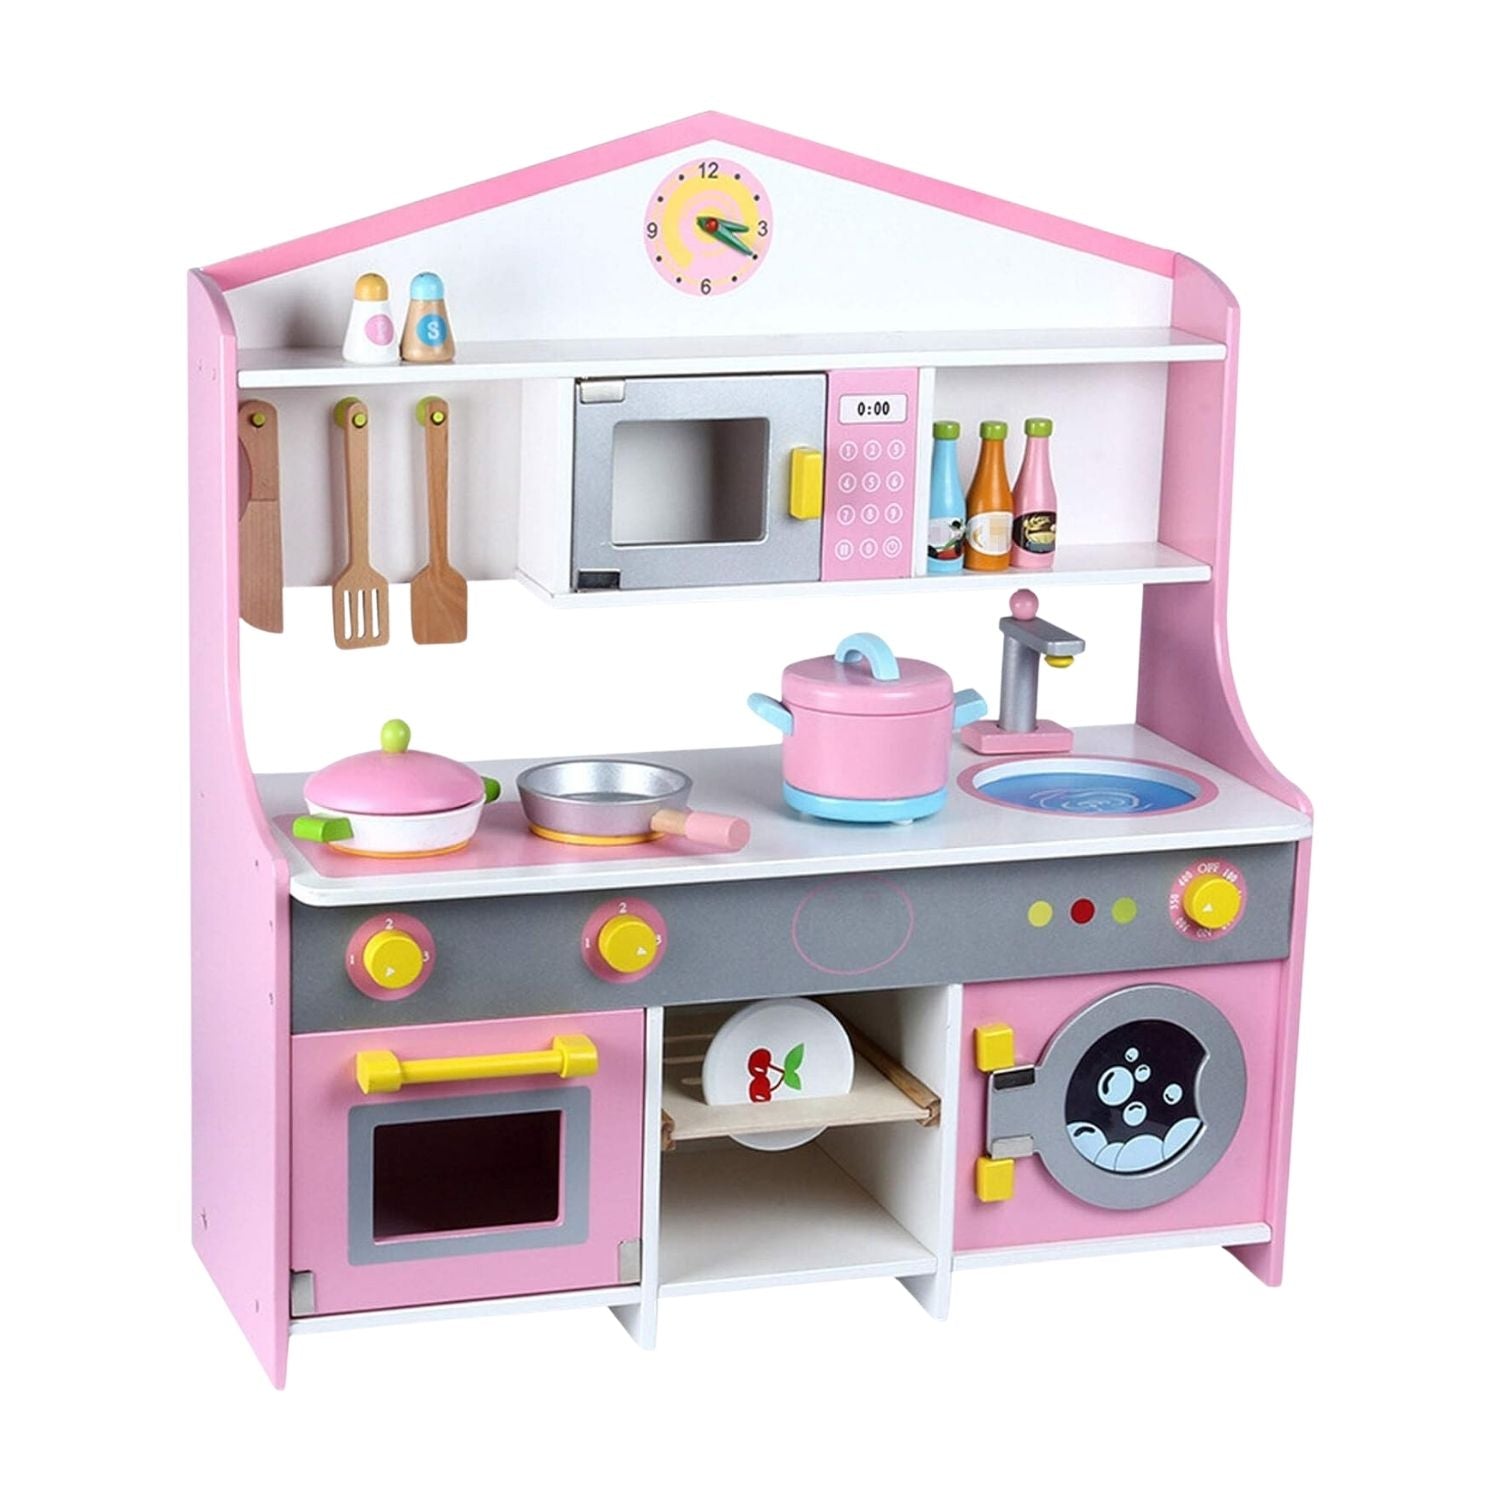 EKKIO Wooden Kitchen Playset for Kids (Japanese Style Kitchen Set, Violet)